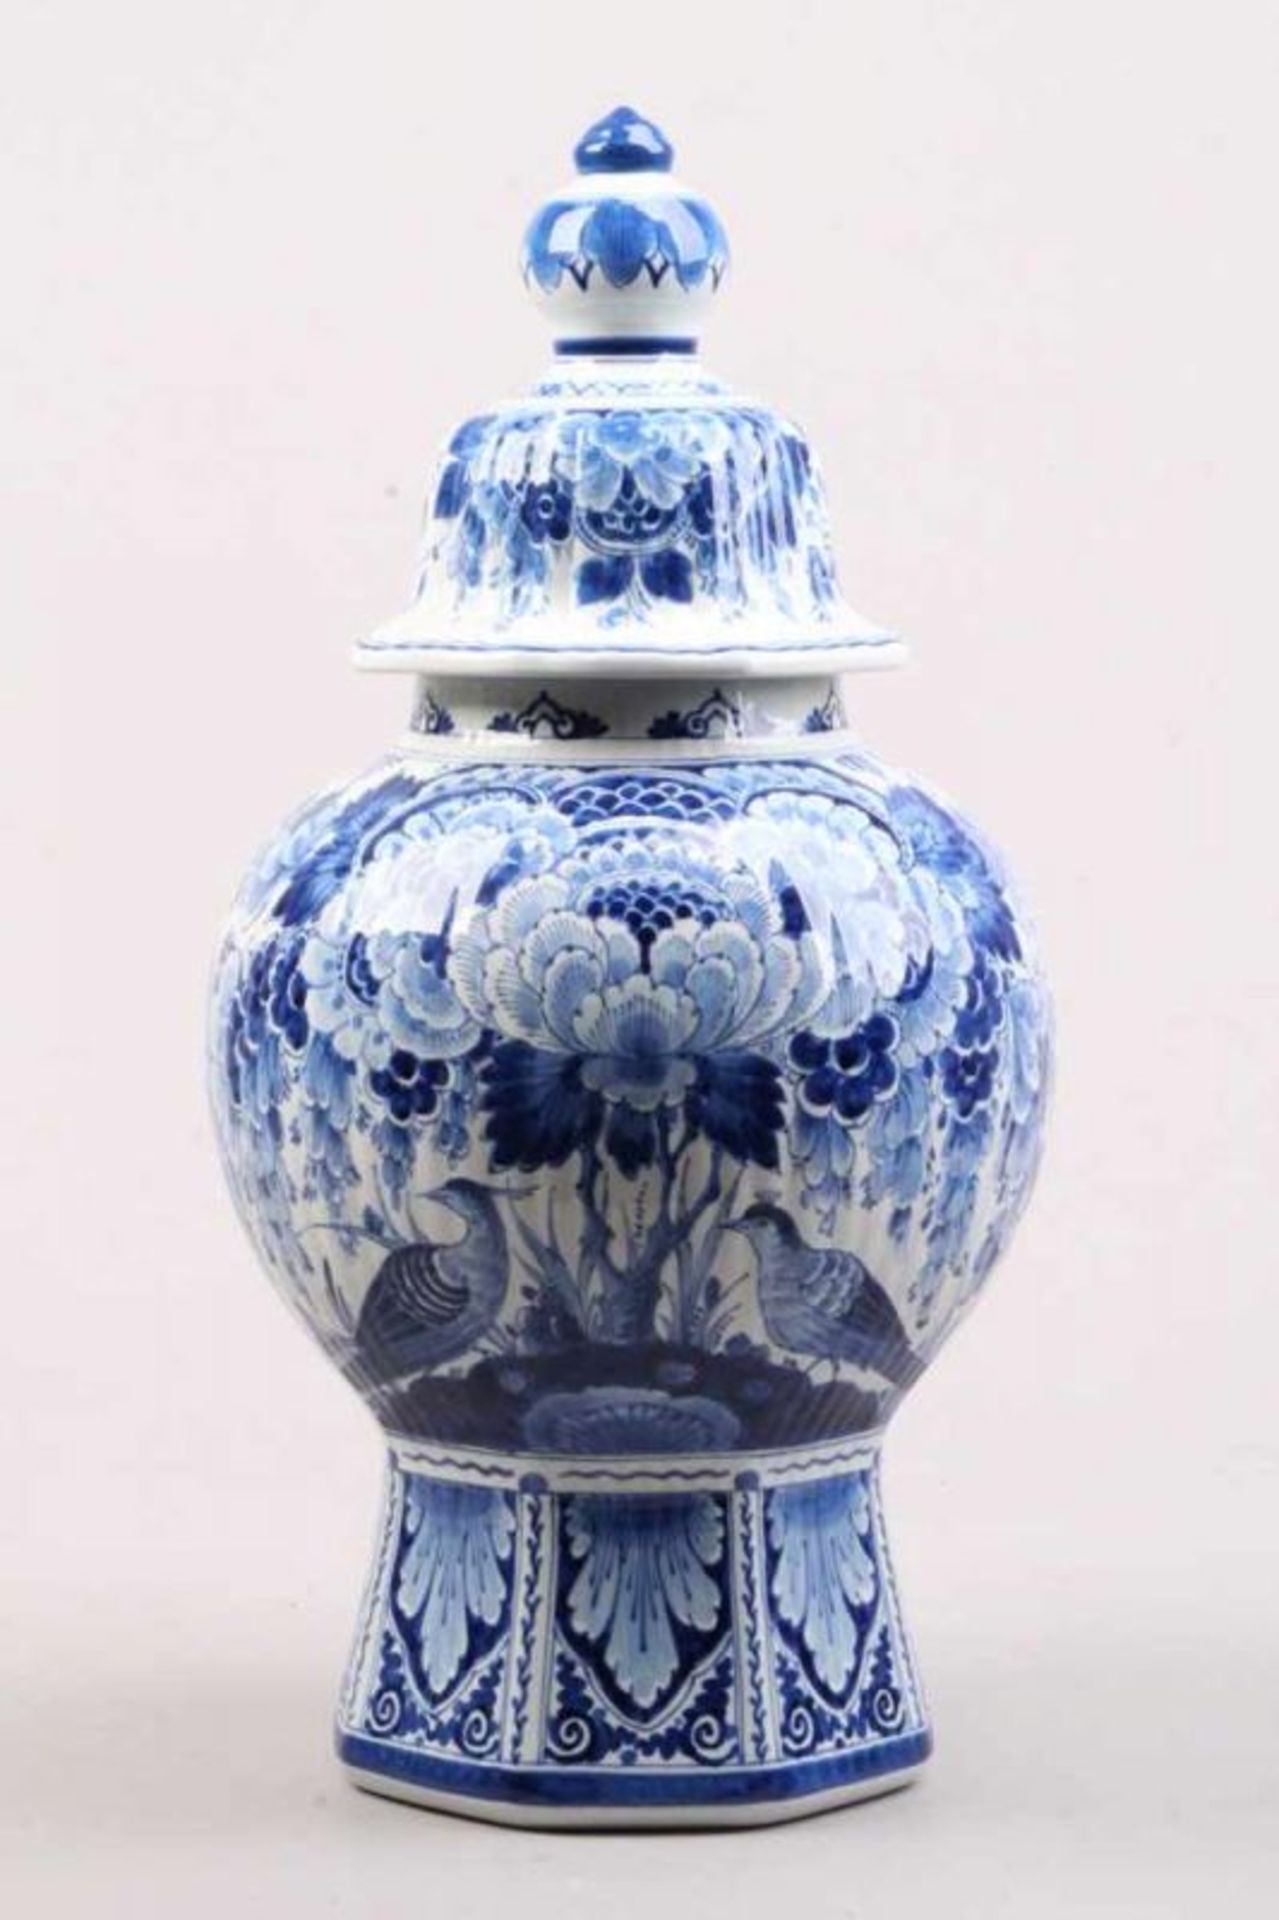 Deckelvase.Delft, um 1900. "De Porceleyne Fles" in der Art von. Fayence. Blaue Blumen und